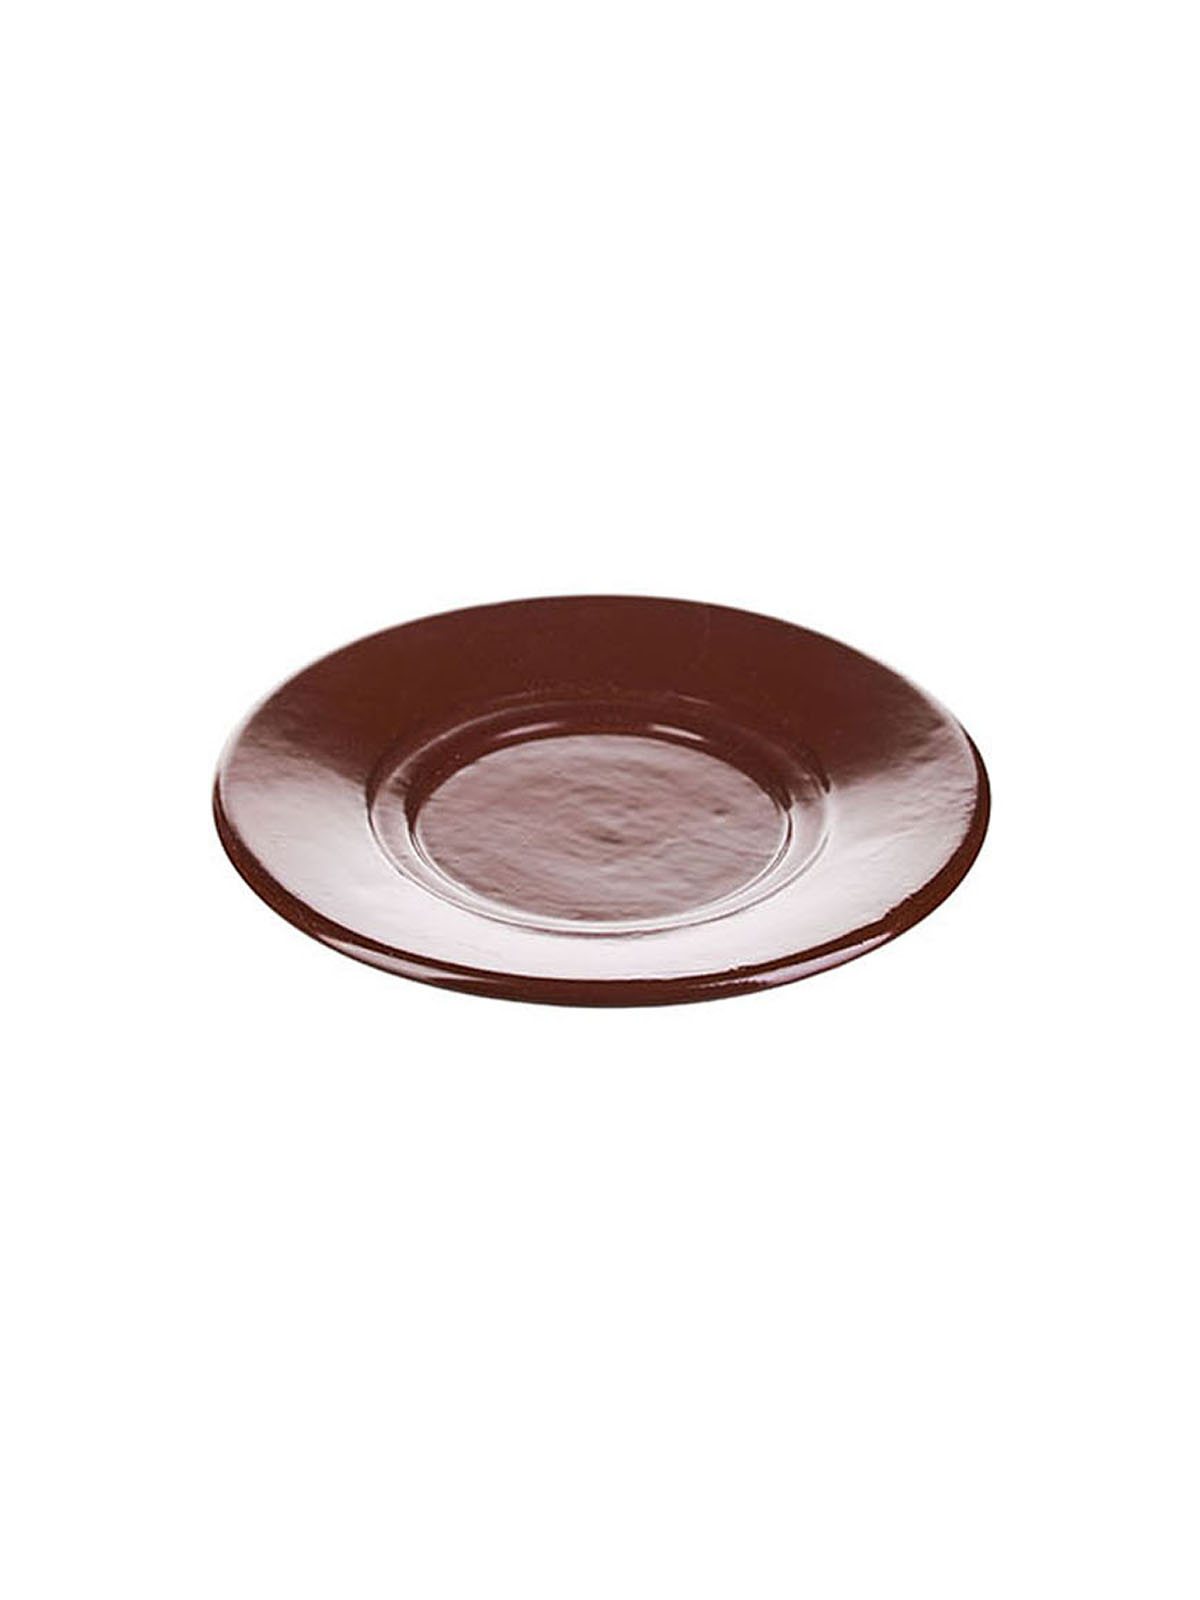 Набор блюдец Борисовская Керамика 6 шт Шоколад, фарфоровые, 15,5 см